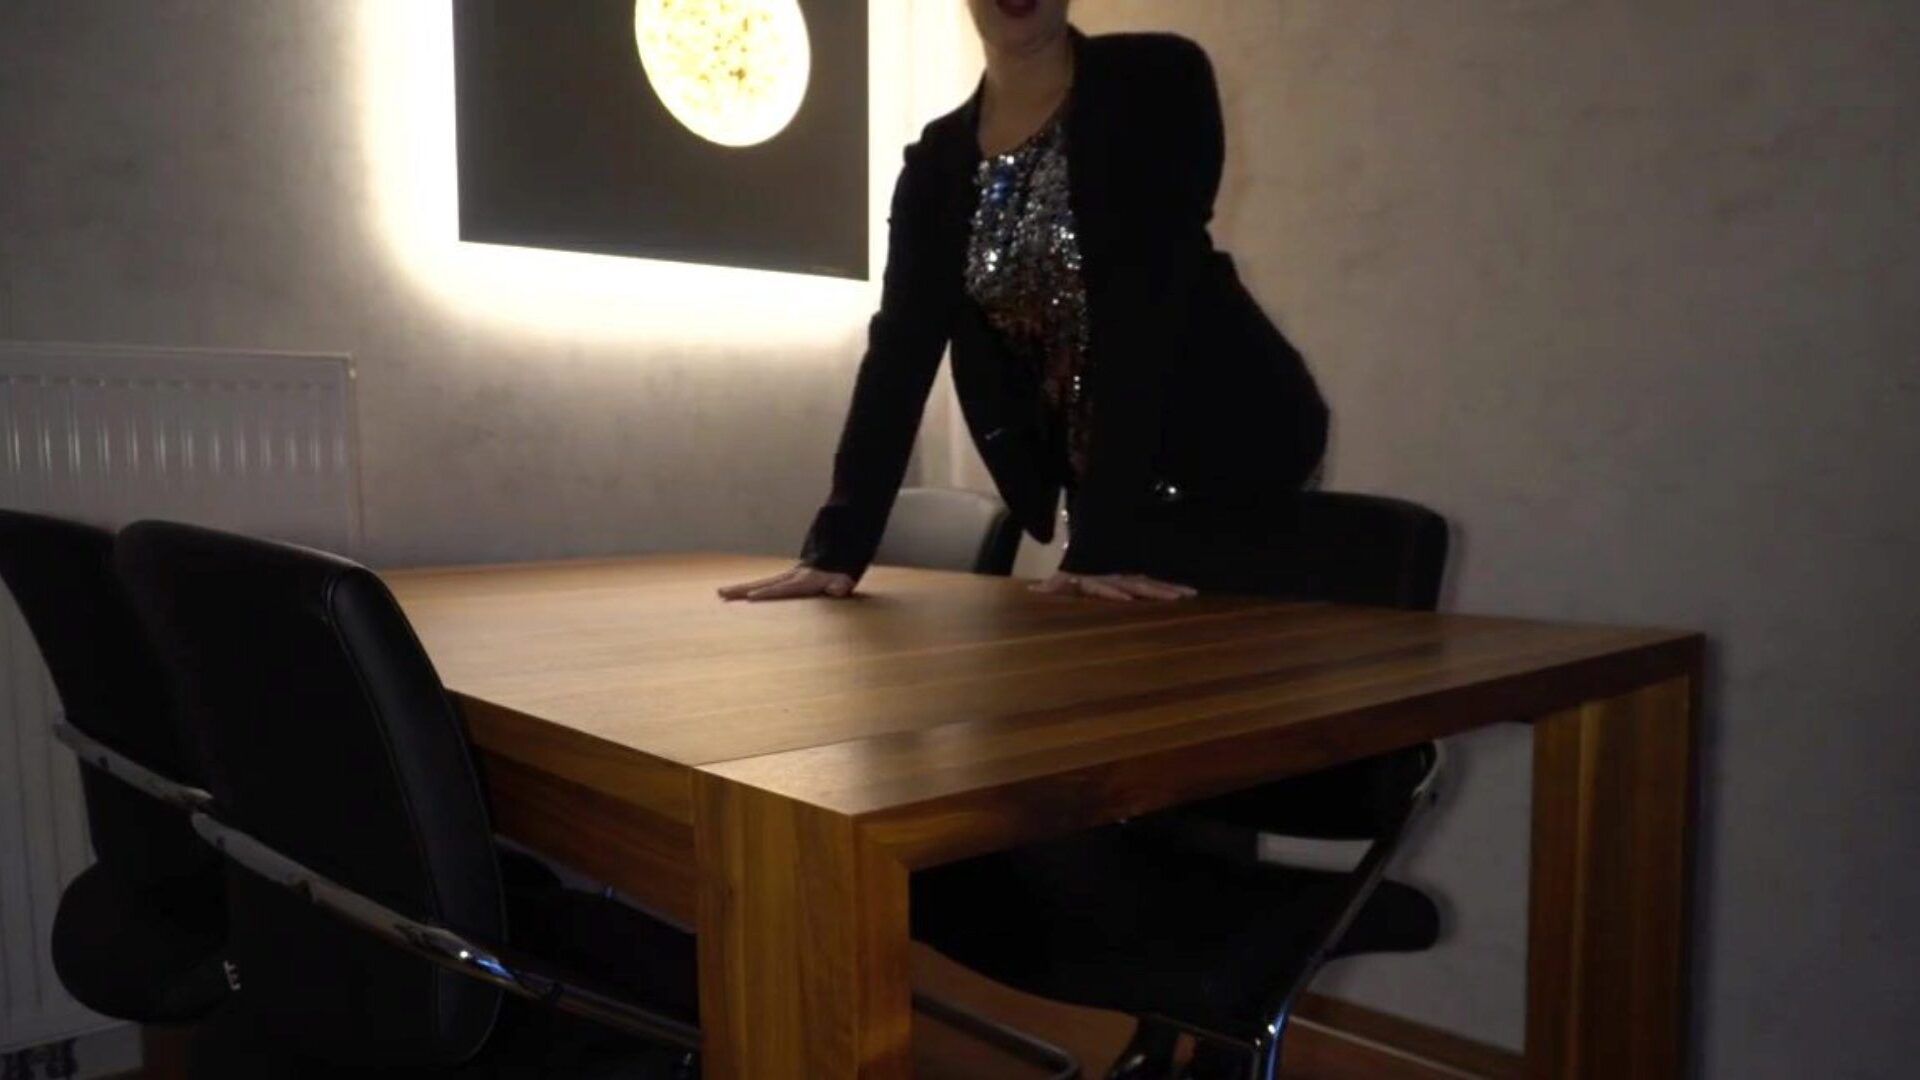 boss knepper sekretær analt på bordet ... se chef knepper sekretær analt på bordet - forretningskælling episode på xhamster - den ultimative samling af gratis dansk milf hd pornografi tube vids